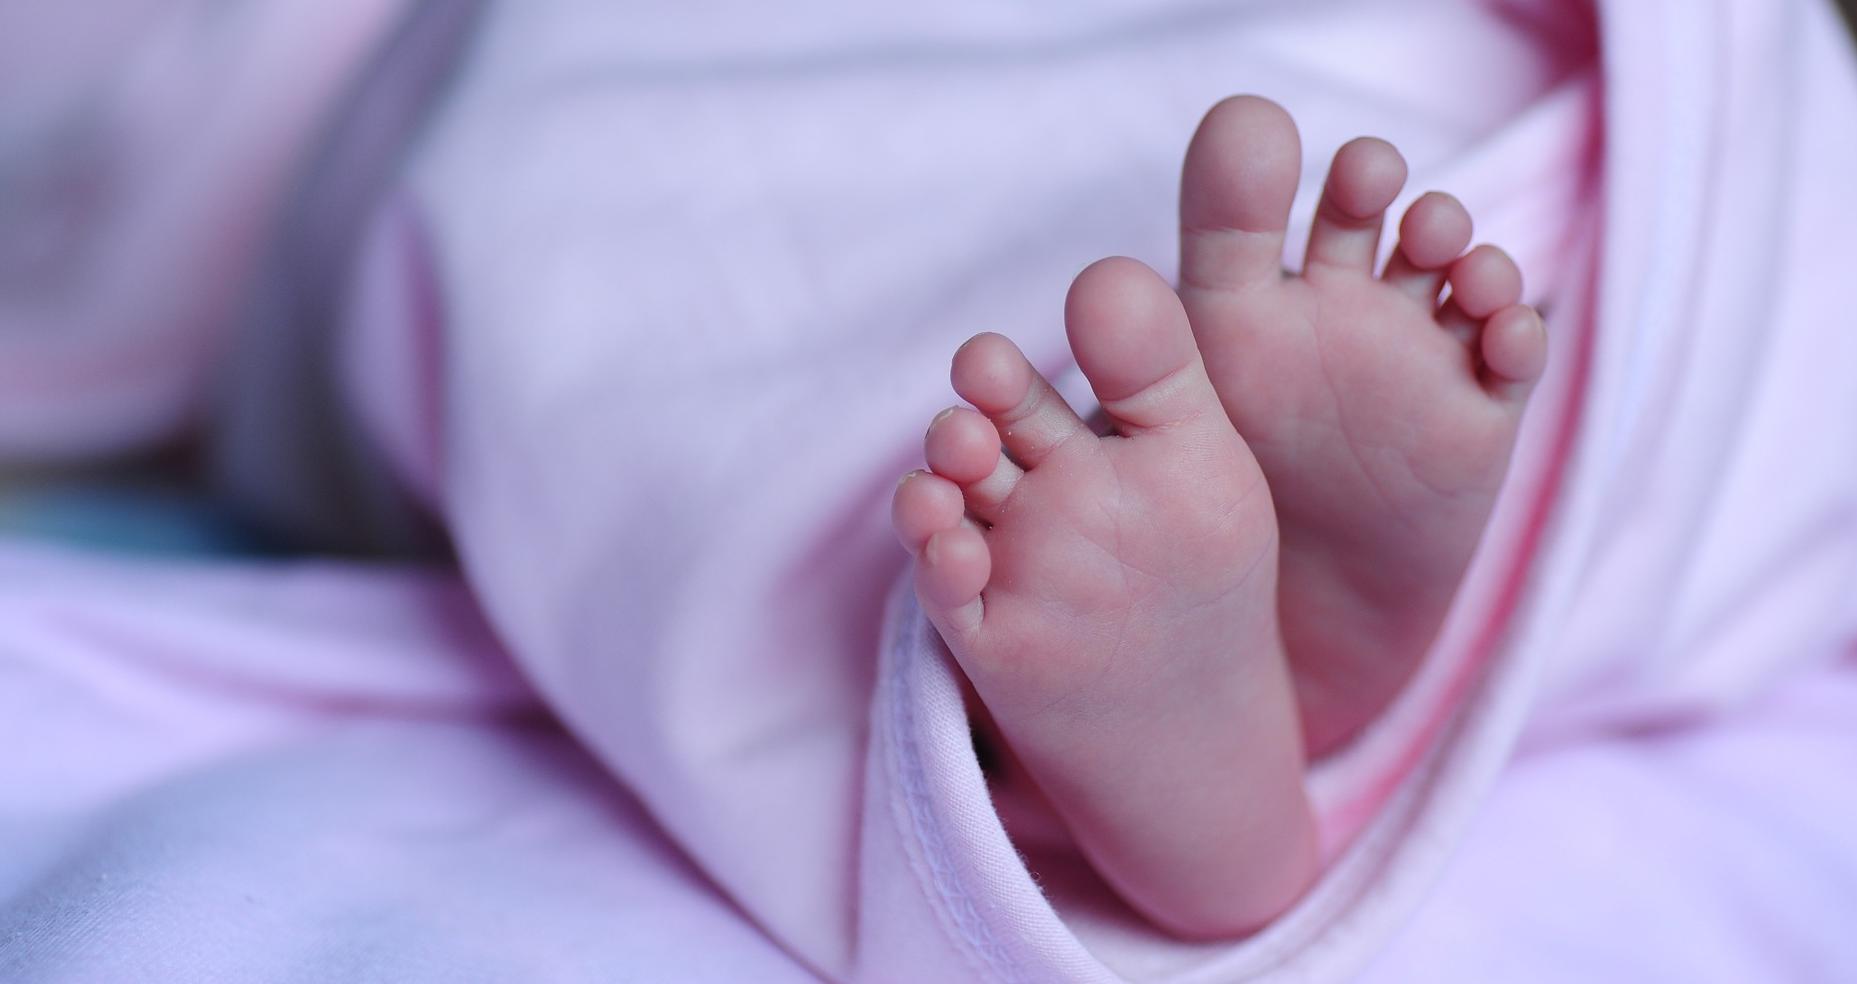 Πρώτες βοήθειες σε περίπτωση που πνίγεται μωρό - ΒΙΝΤΕΟ